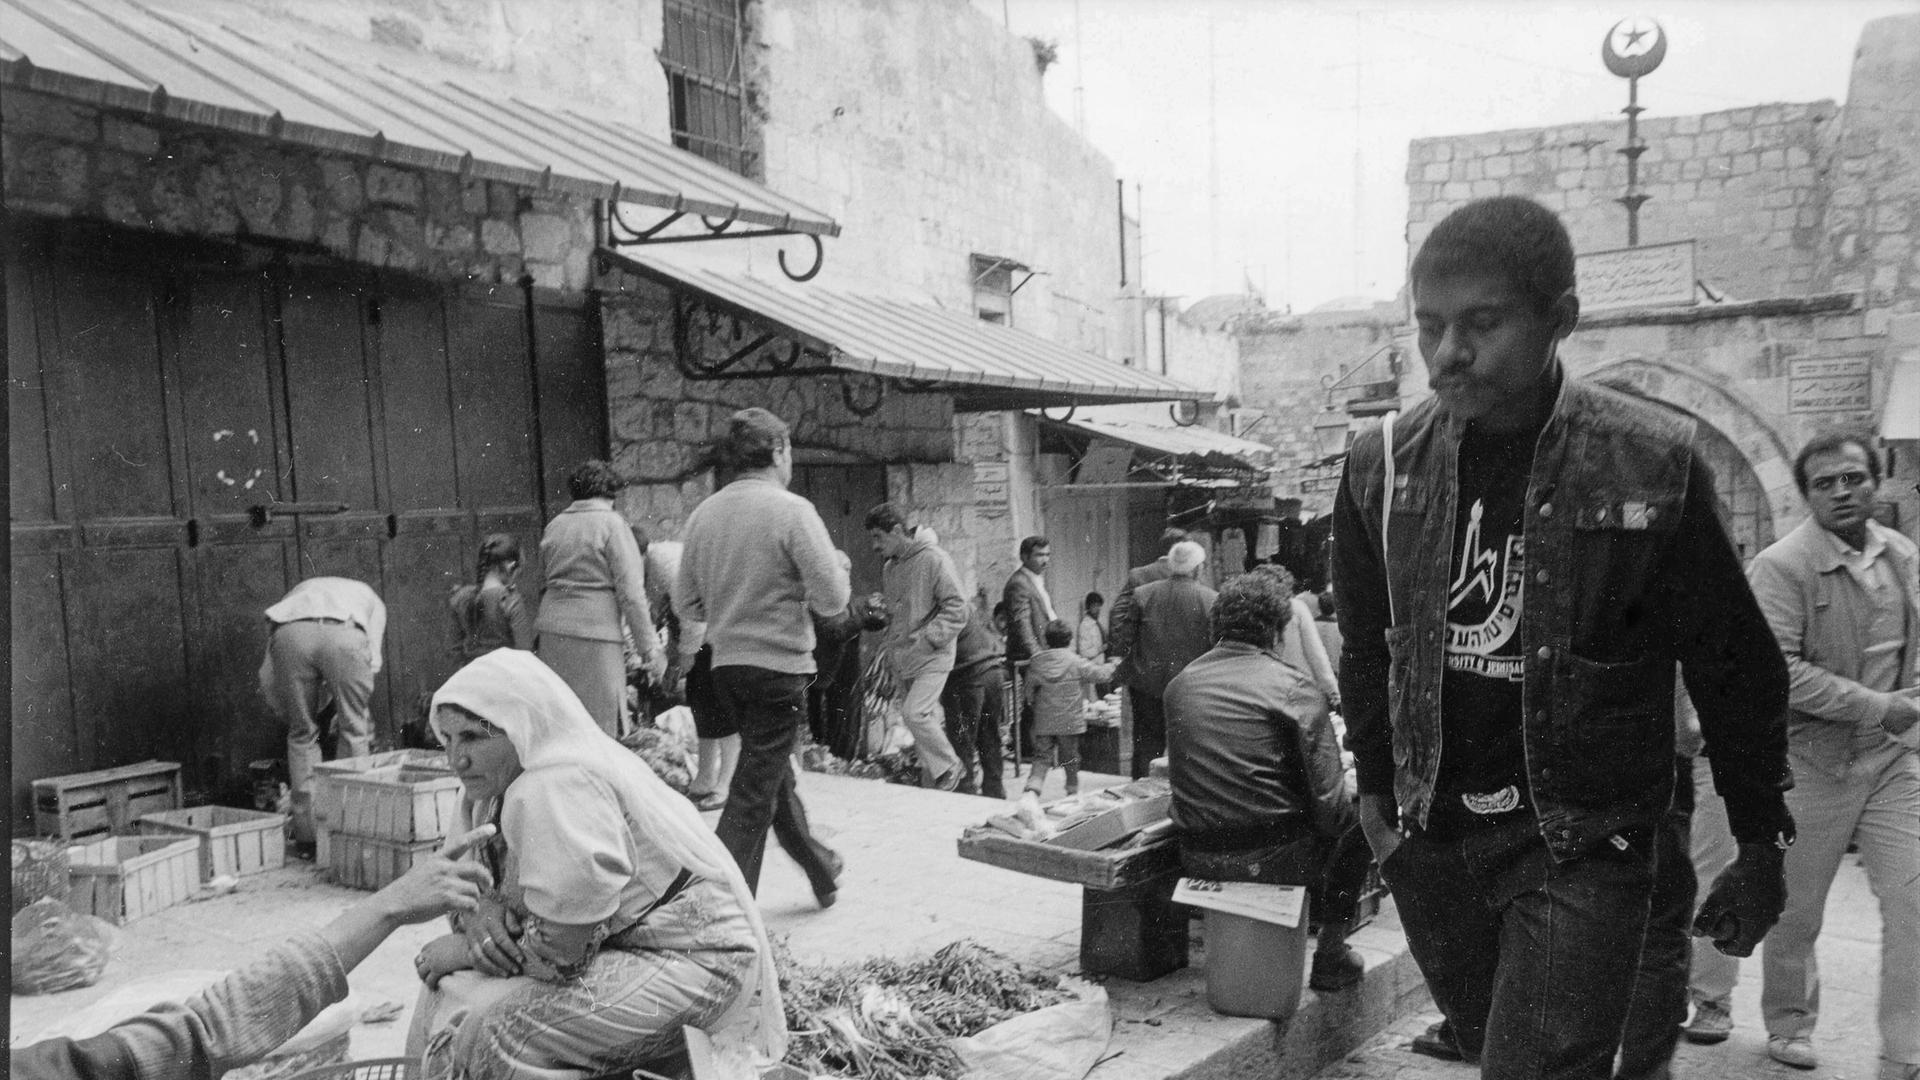 Historische Schwarz-Weiss Fotografie mit einer Straßenszene aus Jerusalem. Ein junger schwarzer Mann in Jeansweste geht entlang einer Marktraße.
